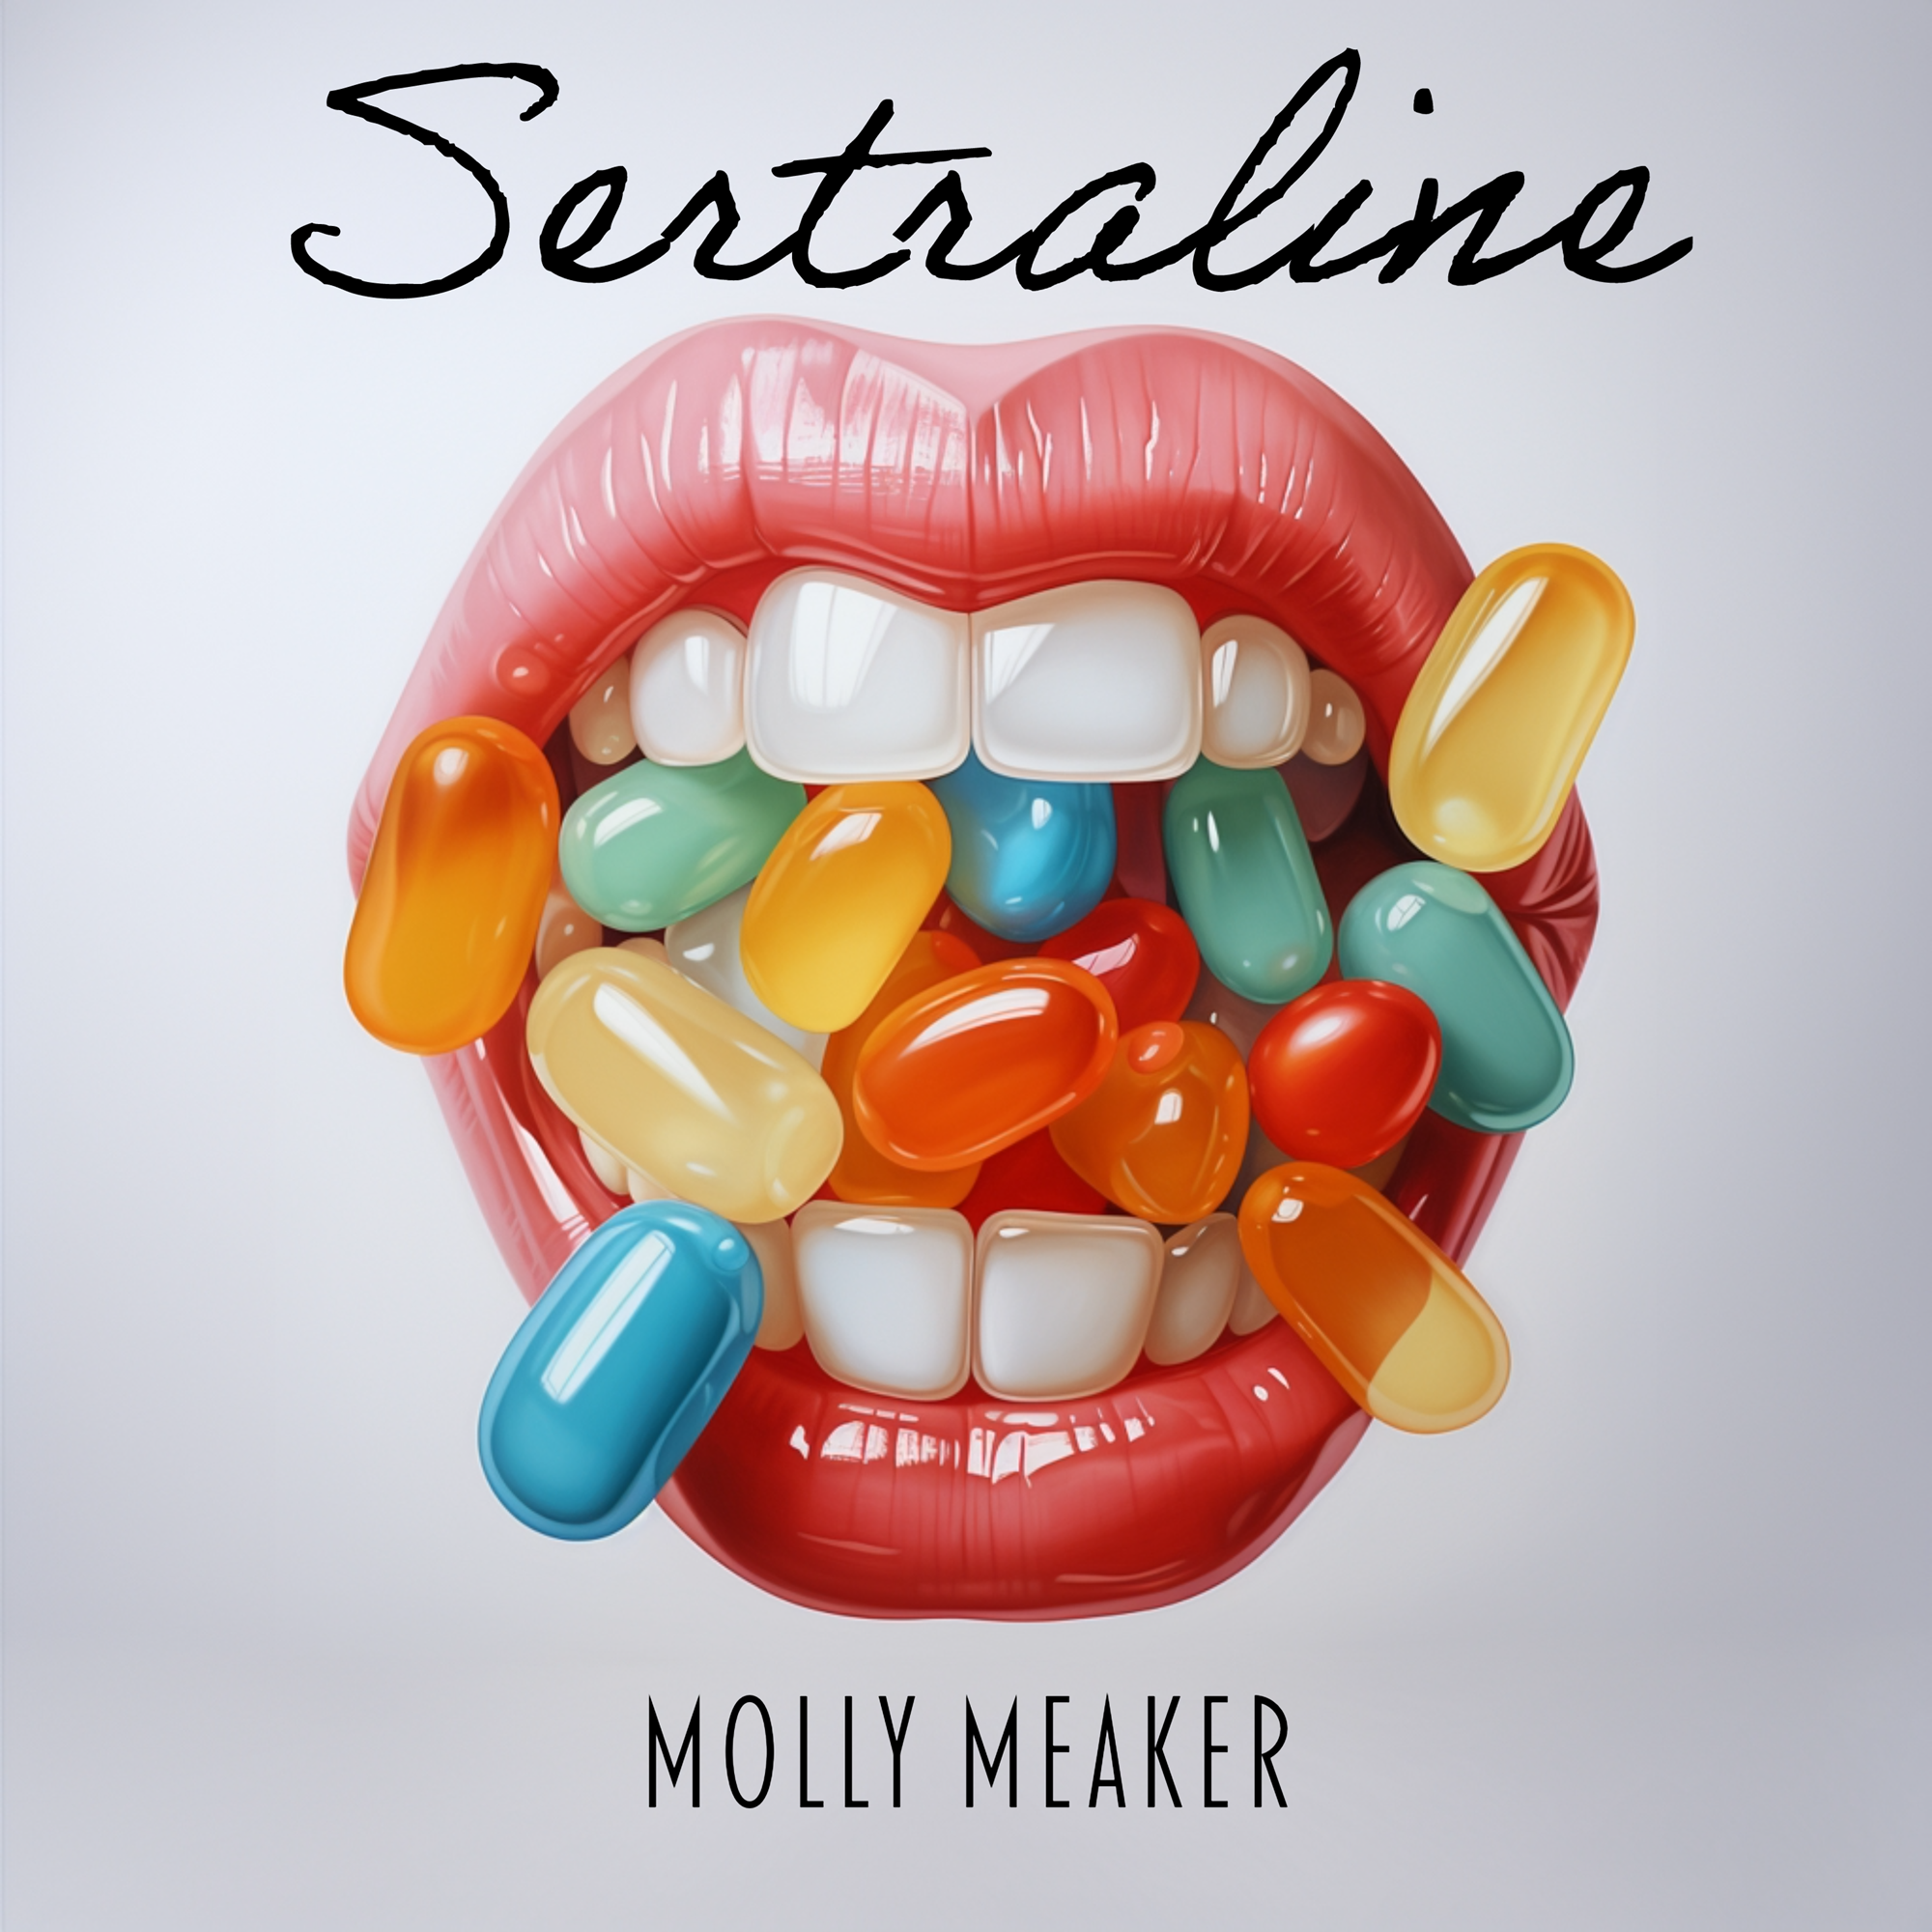 Molly Meaker channels ‘90s grunge in stellar debut single ‘Sertraline’